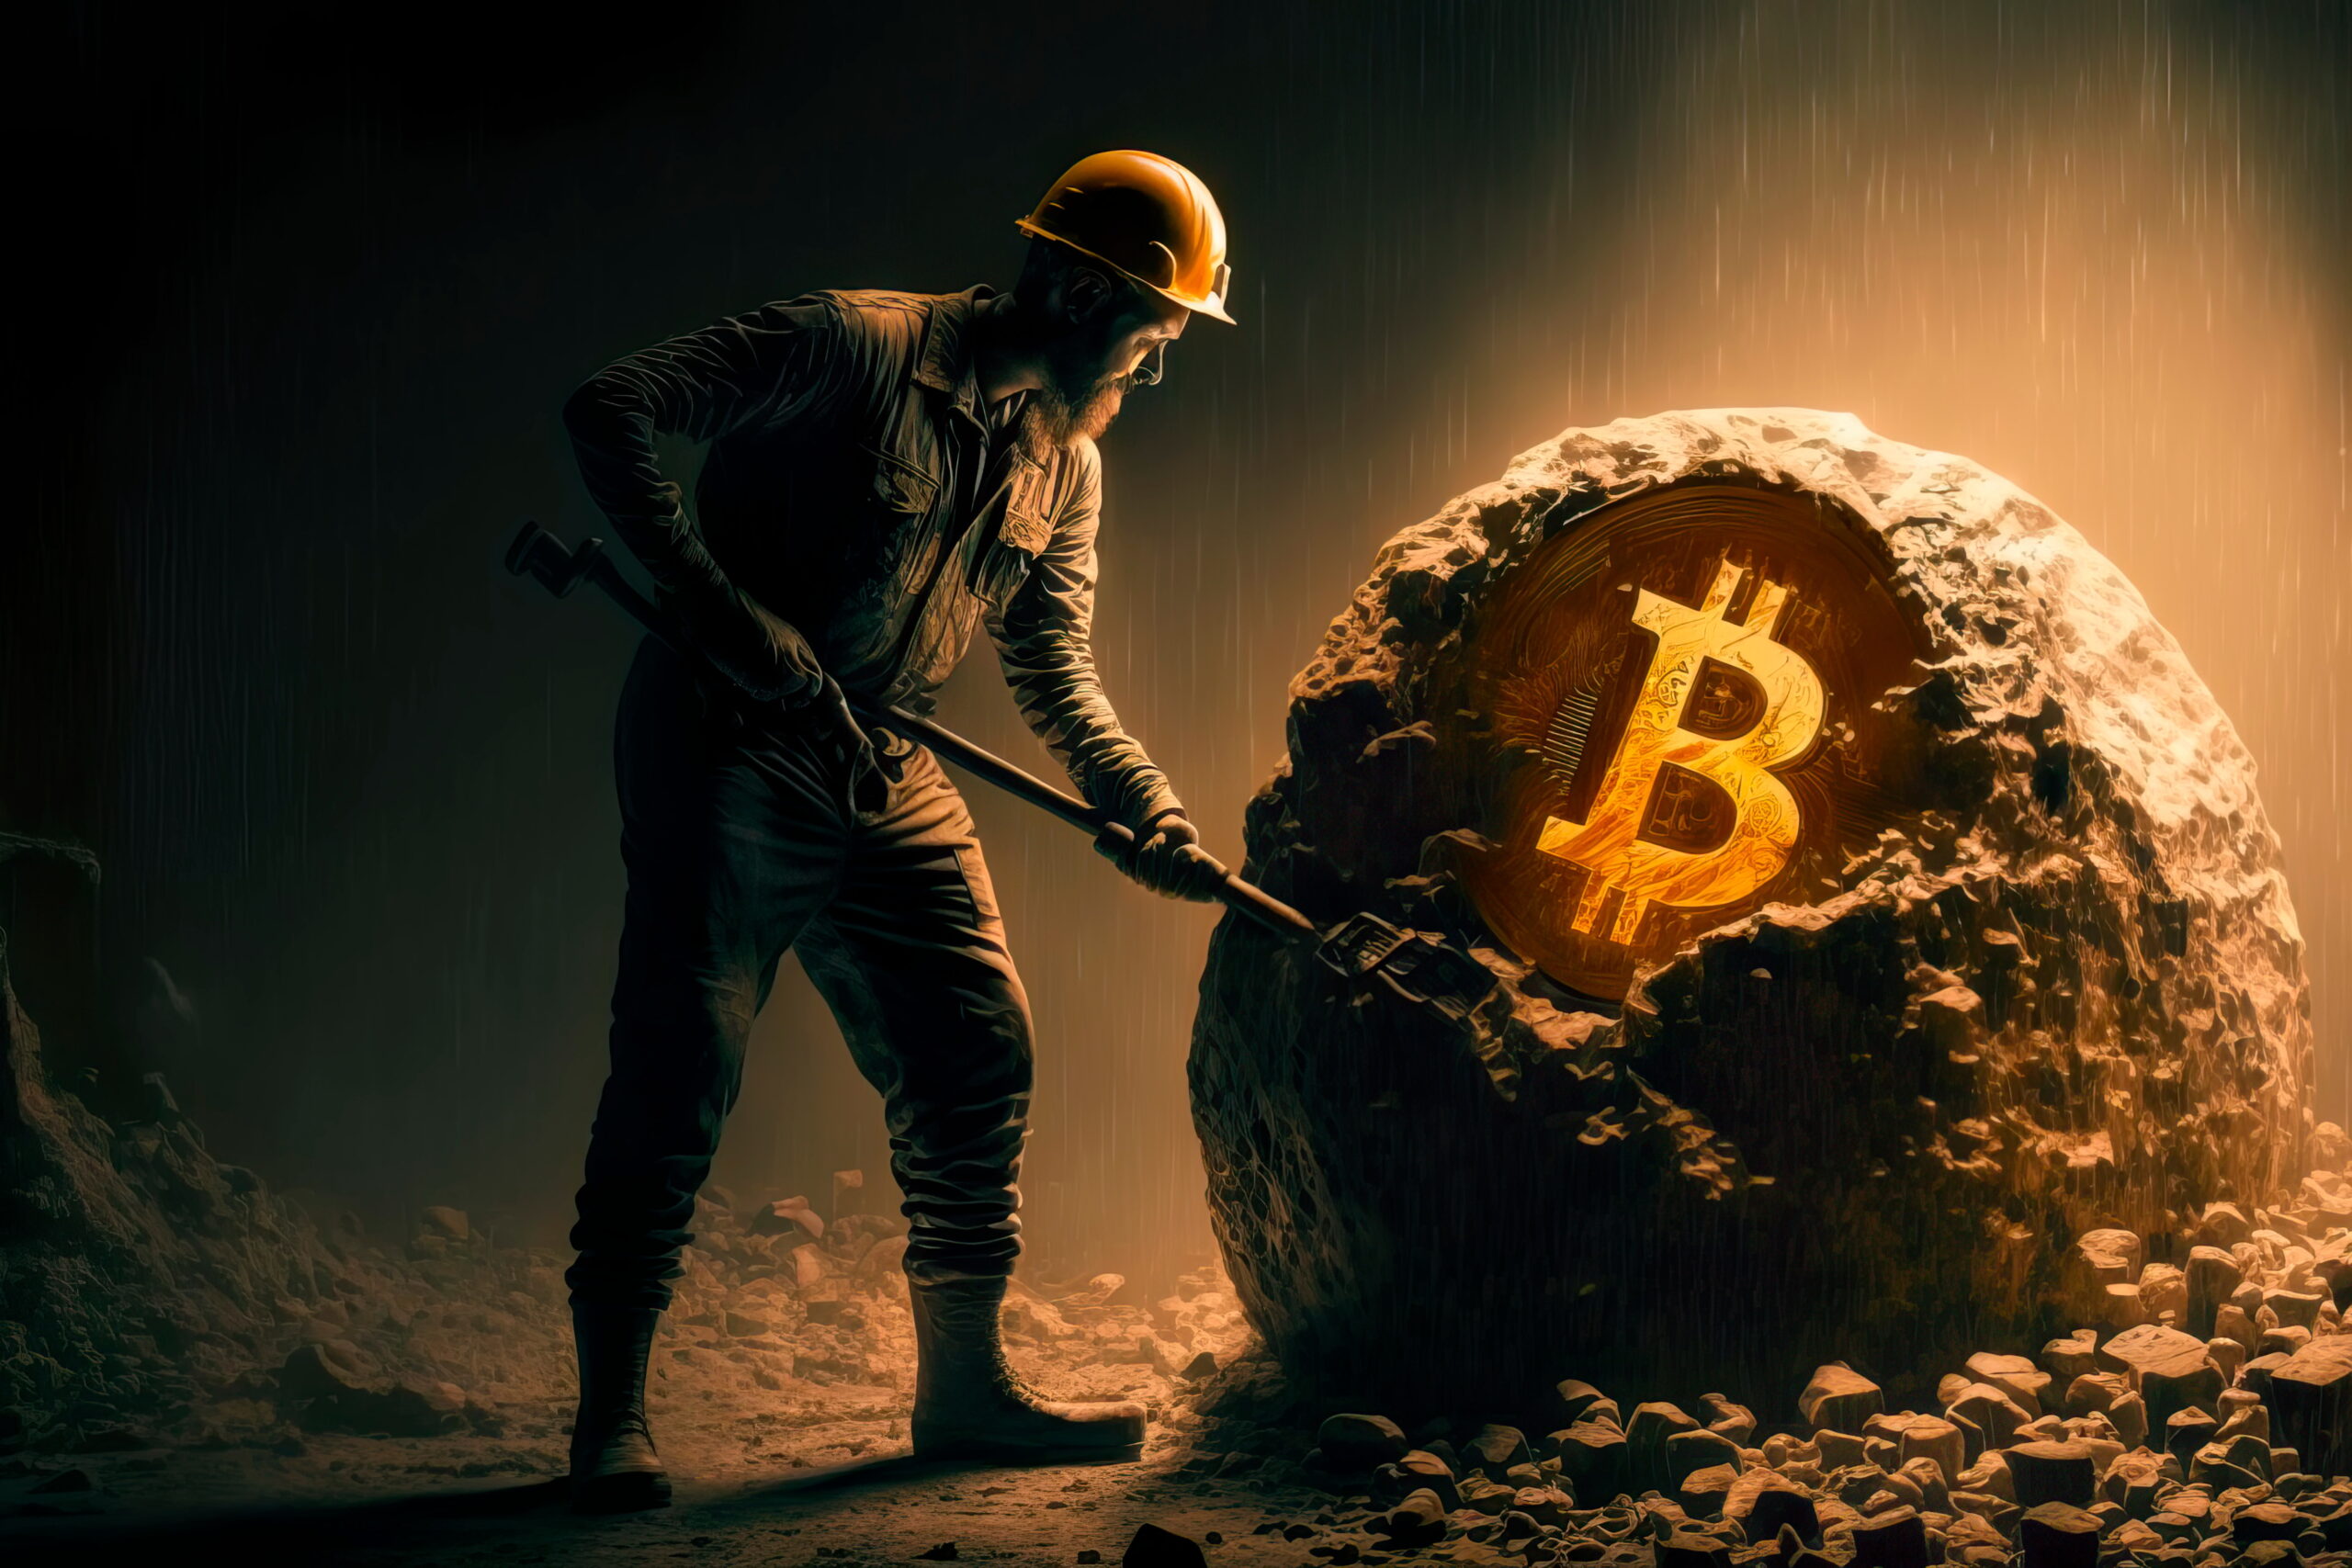 Post-Halving, Bitcoin Must Surpass $80,000 to Sustain Profitable Mining